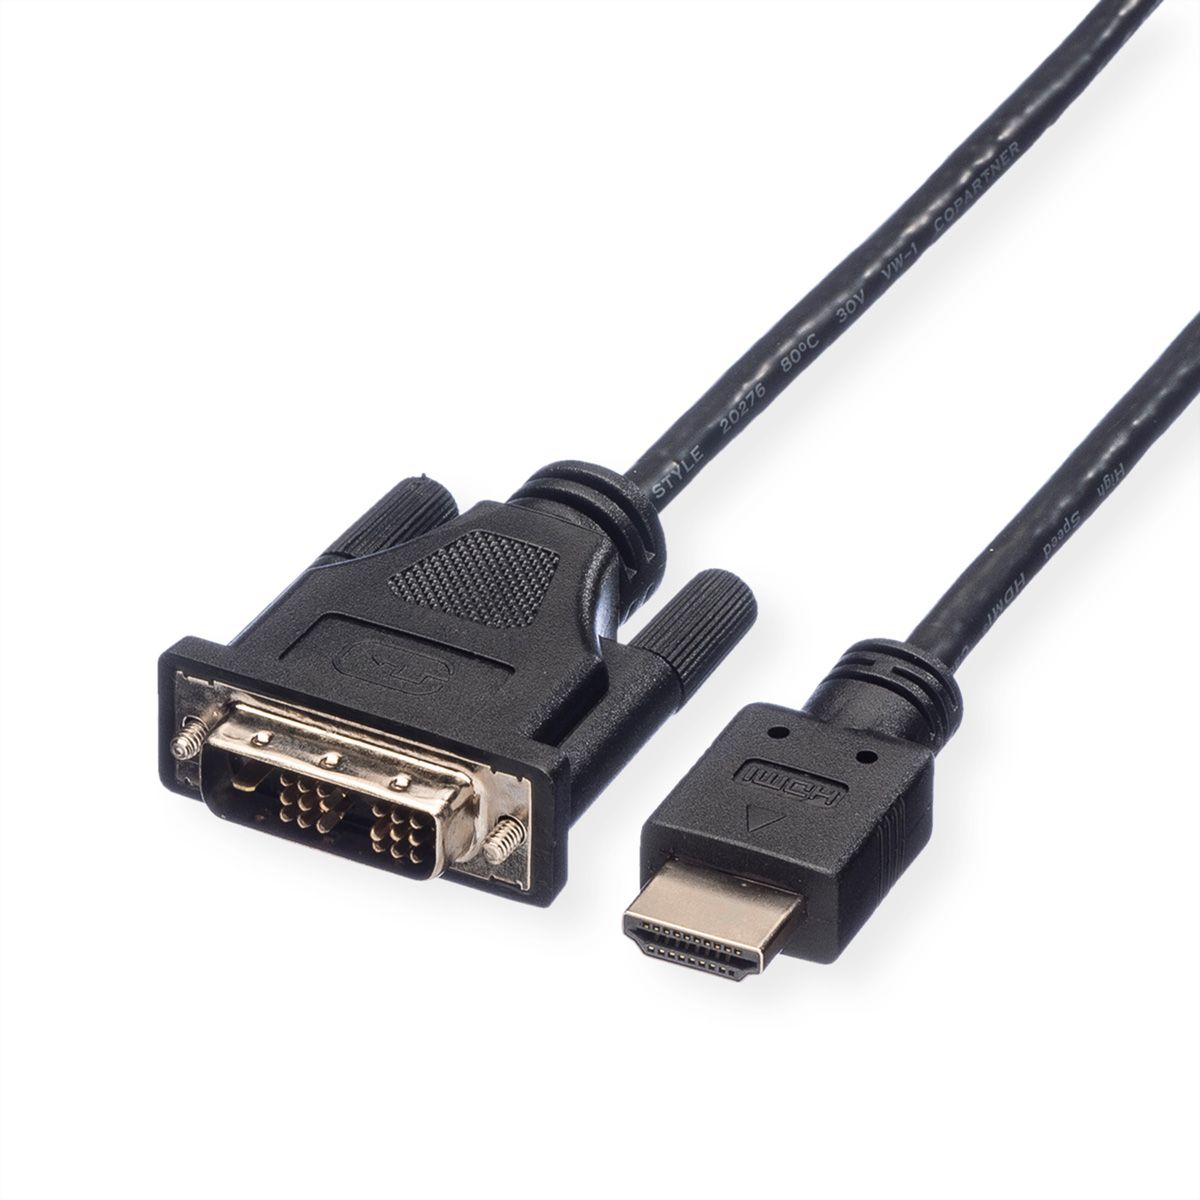 2m ROLINE Câble DVI HDMI I Câble décran avec connecteur DVI D 24+1 Dual Link et HDMI I 4K Ultra HD I noir/argent 